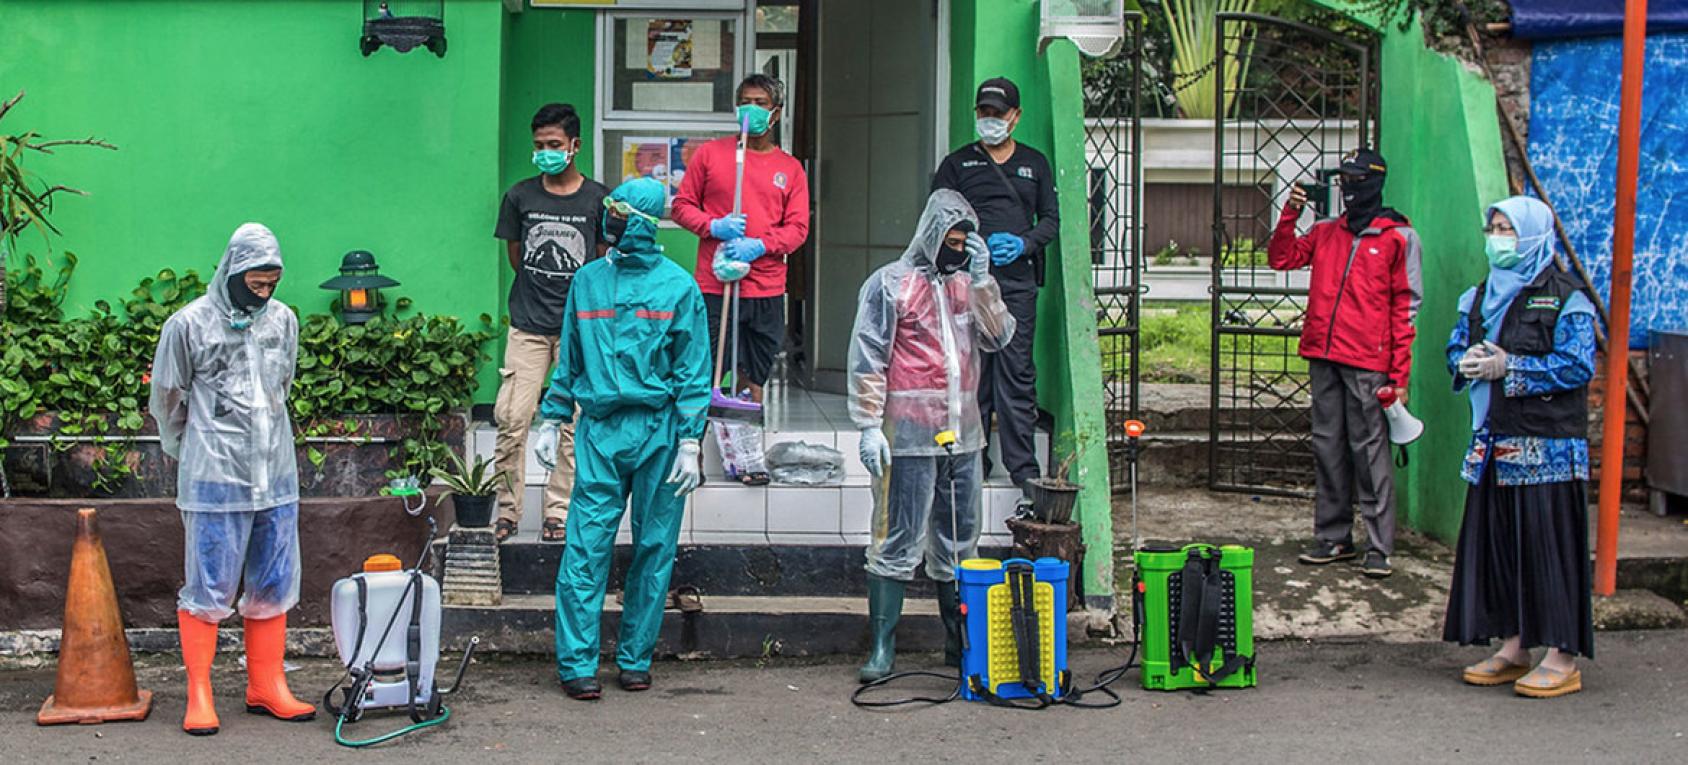 Plusieurs hommes portant un masque de protection respiratoire se tiennent devant la façade verte d'une maison. Les hommes photographiés au premier plan portent, chacun, un équipement de protection individuelle, leur matériel de désinfection posé au sol, près d'eux.